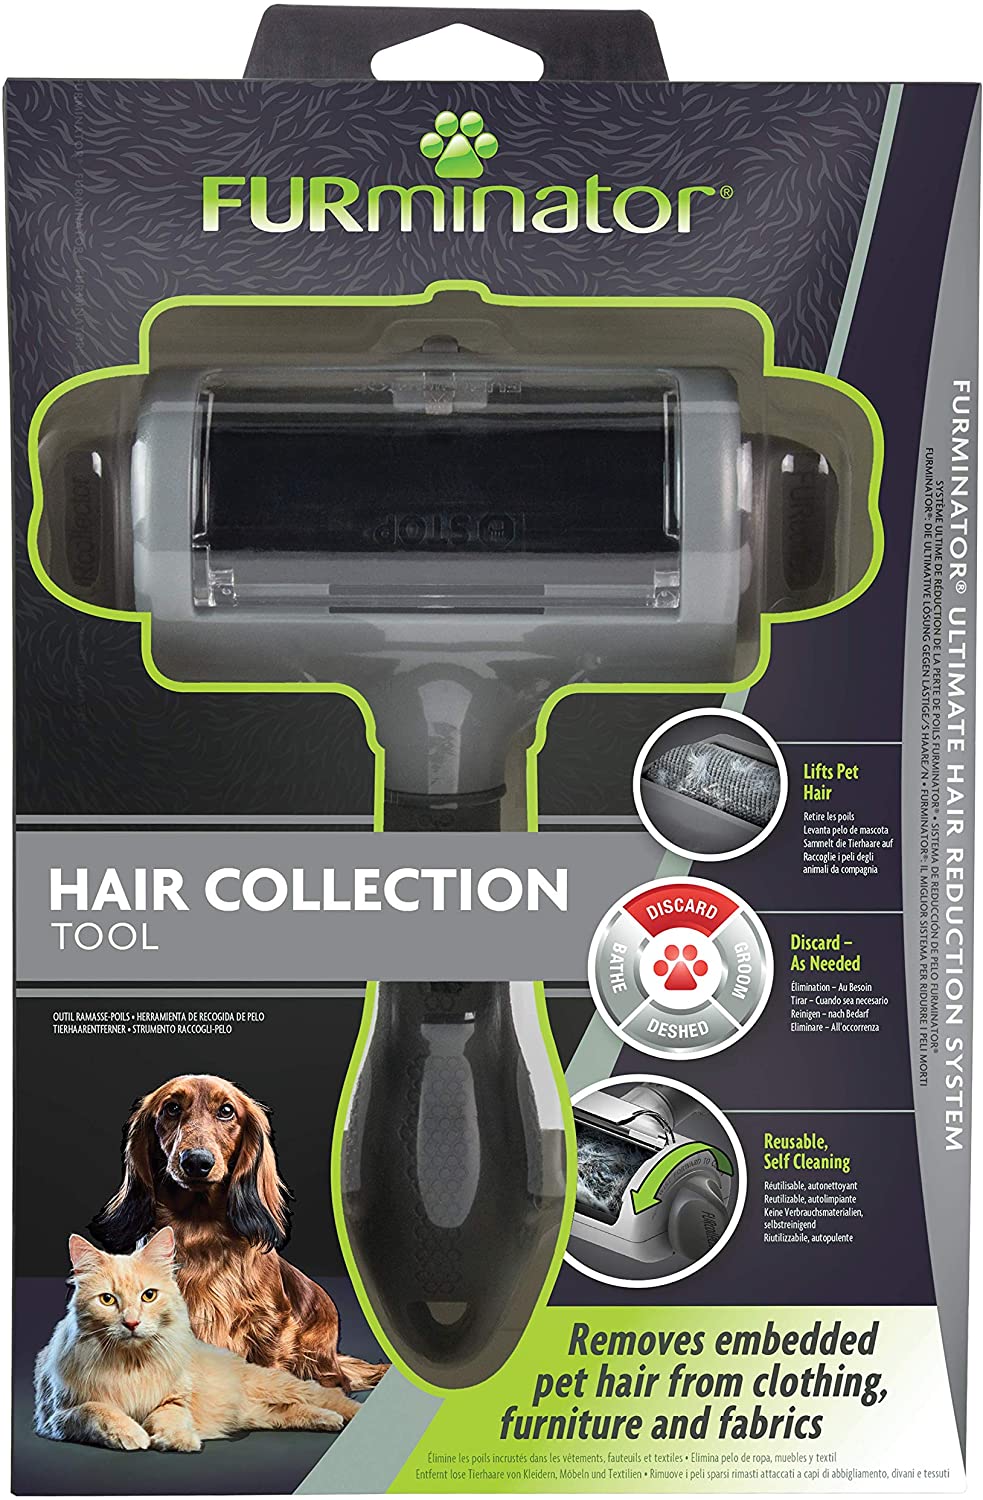  Furminator - Cepillo quitapelusas Reutilizable para Eliminar pelos Sueltos de Perros y Gatos de Ropa, Muebles y Telas 